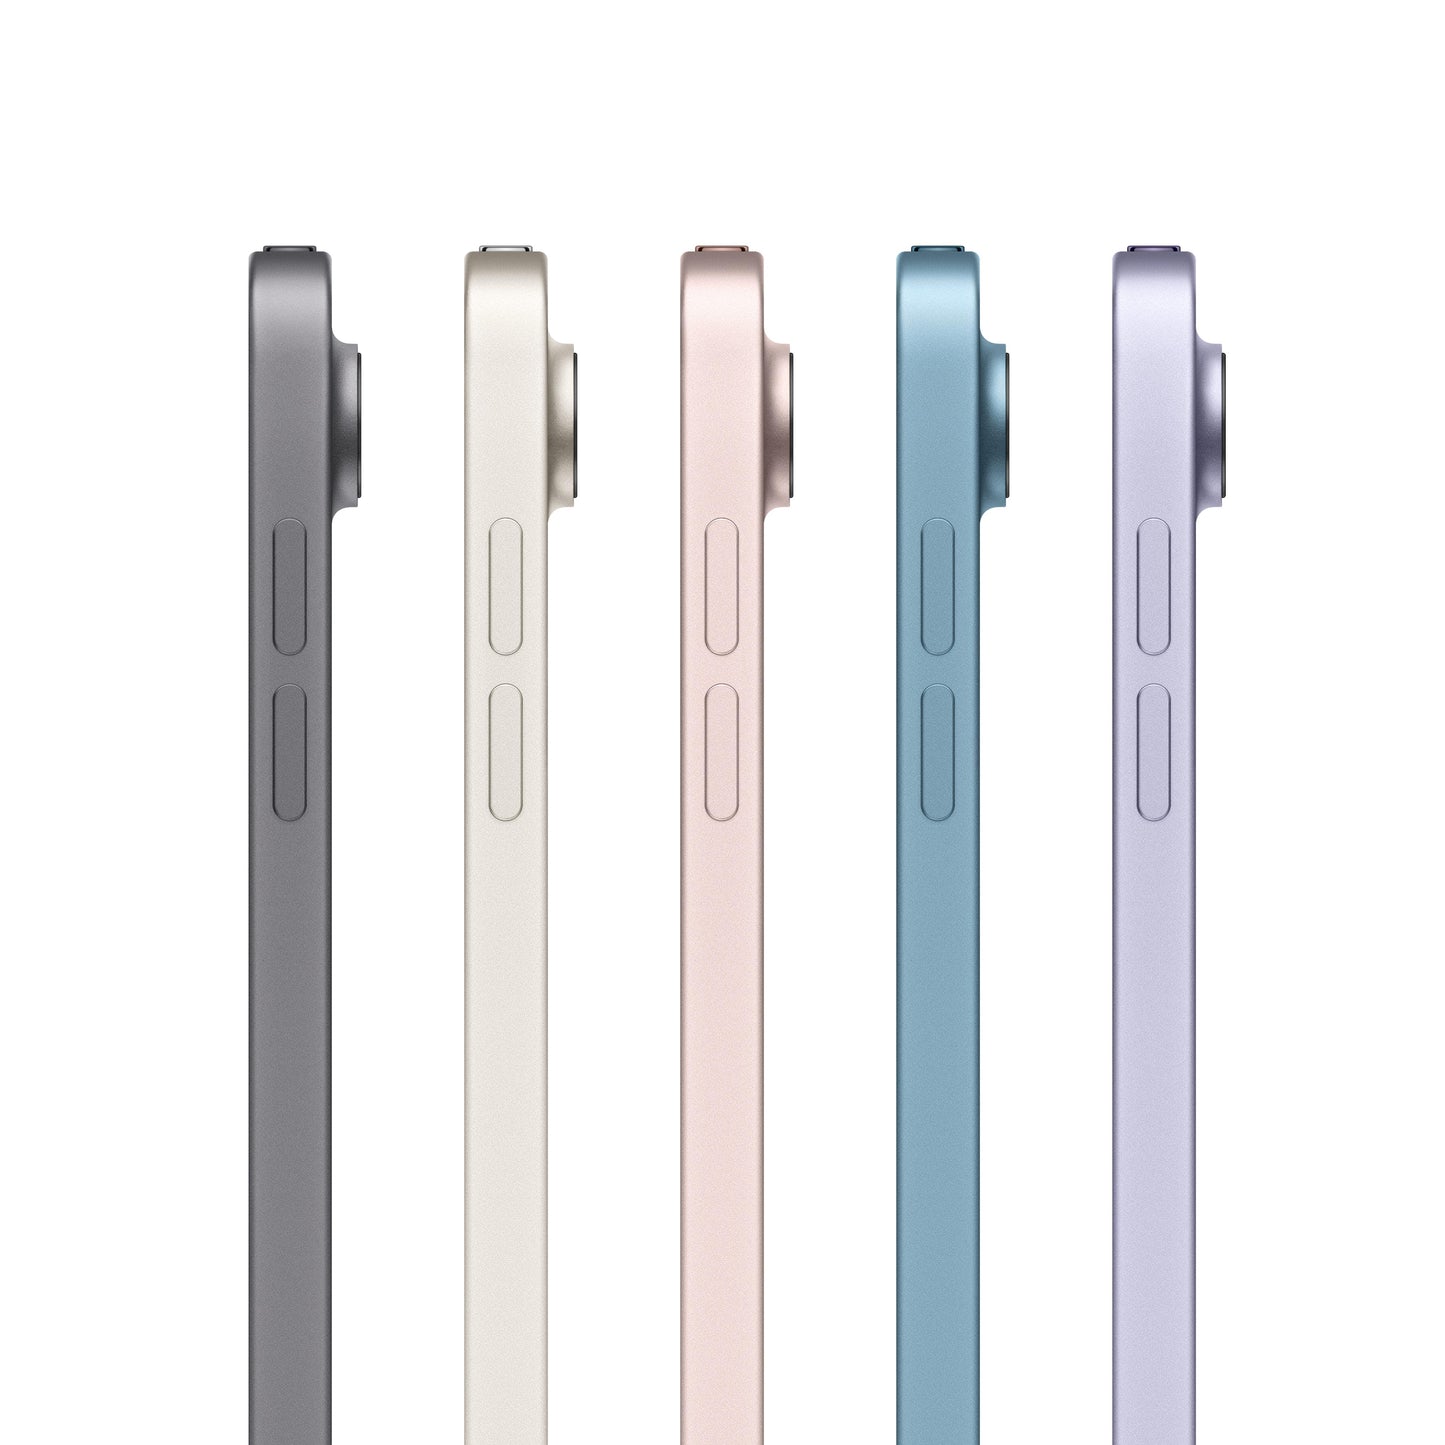 10.9-inch iPad Air Wi-Fi 64GB - Starlight